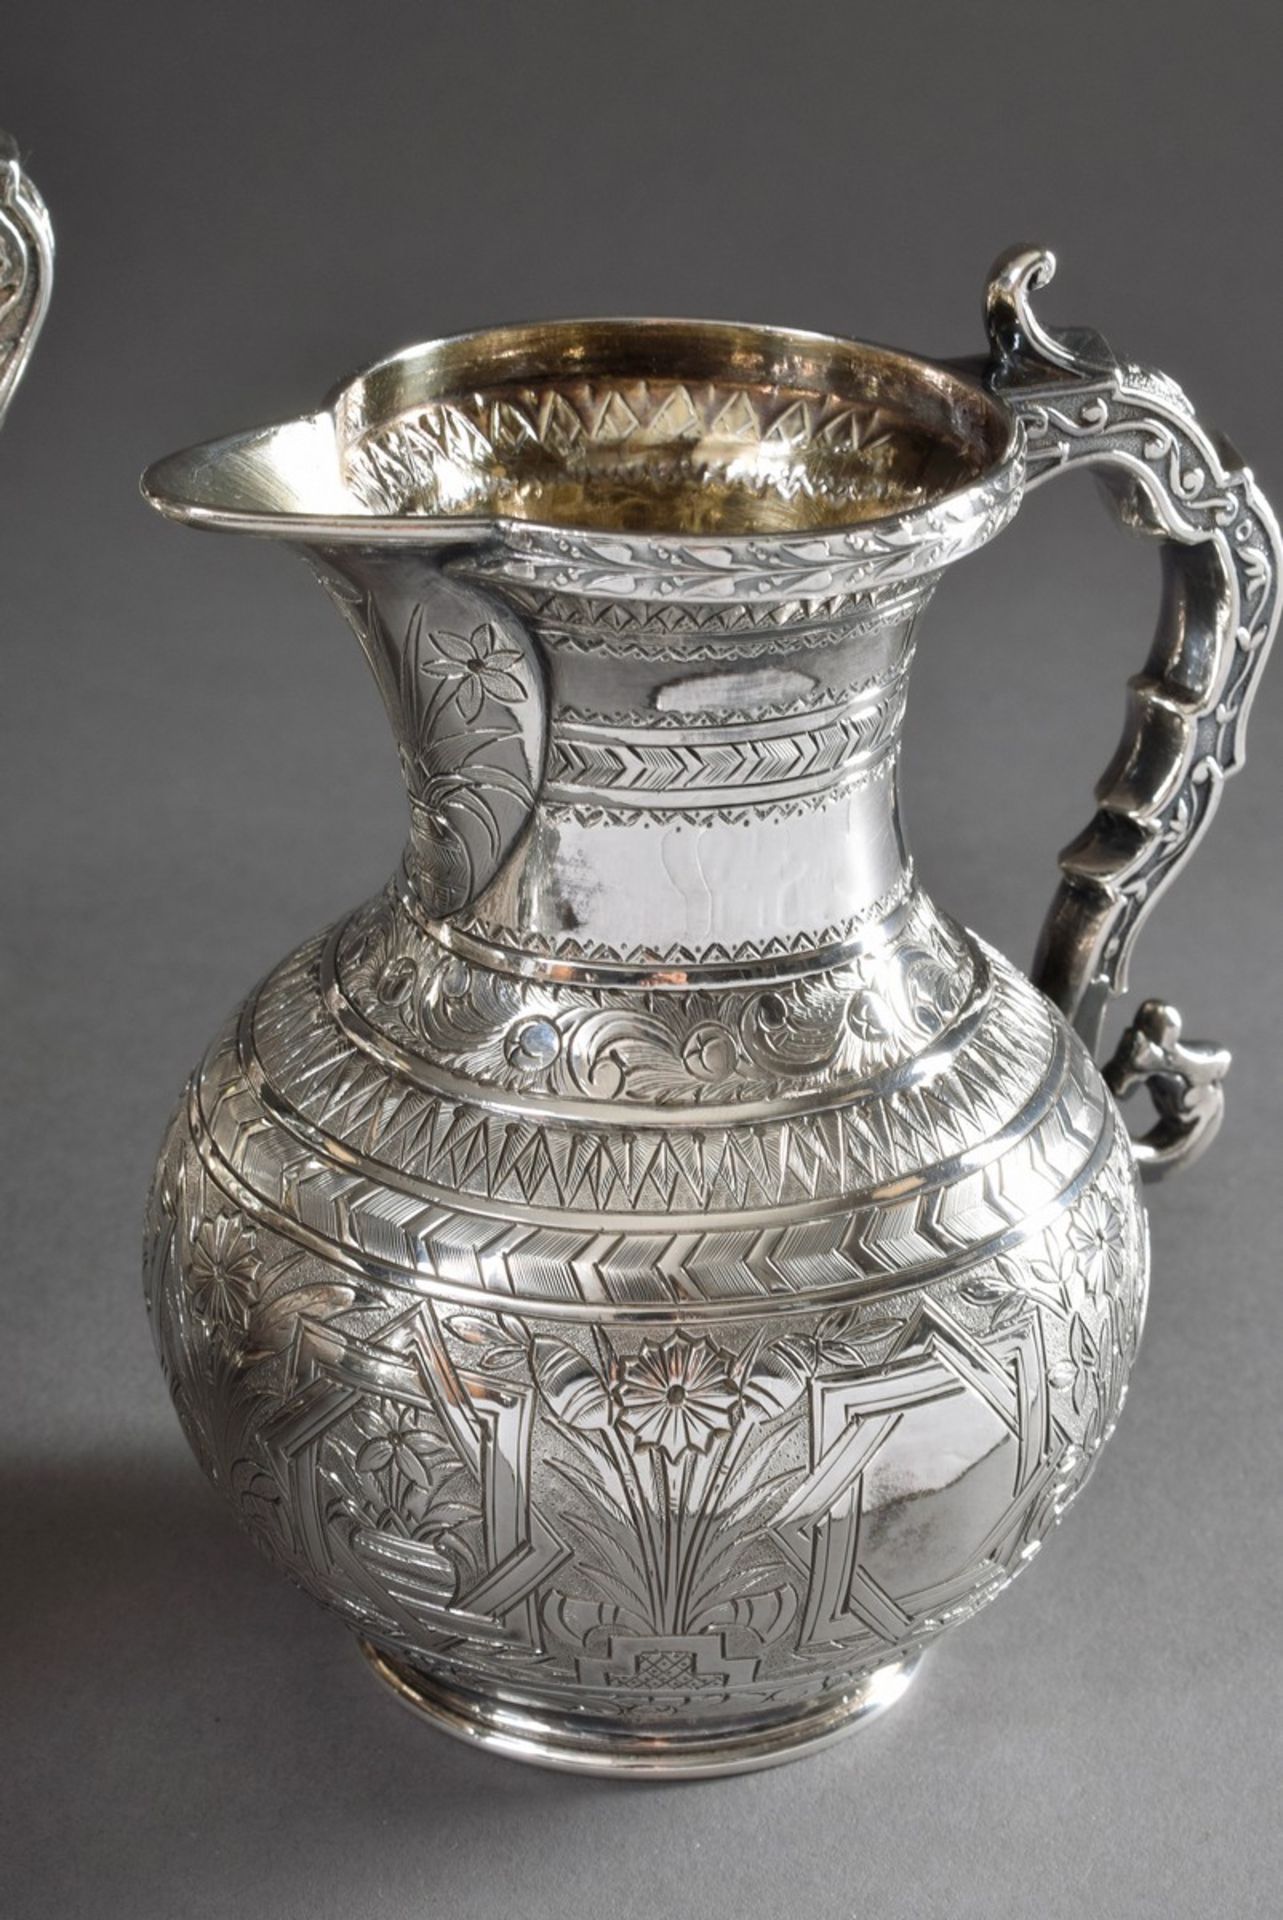 3 Teile viktorianisches Teeset mit reichem Gravurdekor in orientalischem Stil, W & C/Sissons, London - Bild 2 aus 5